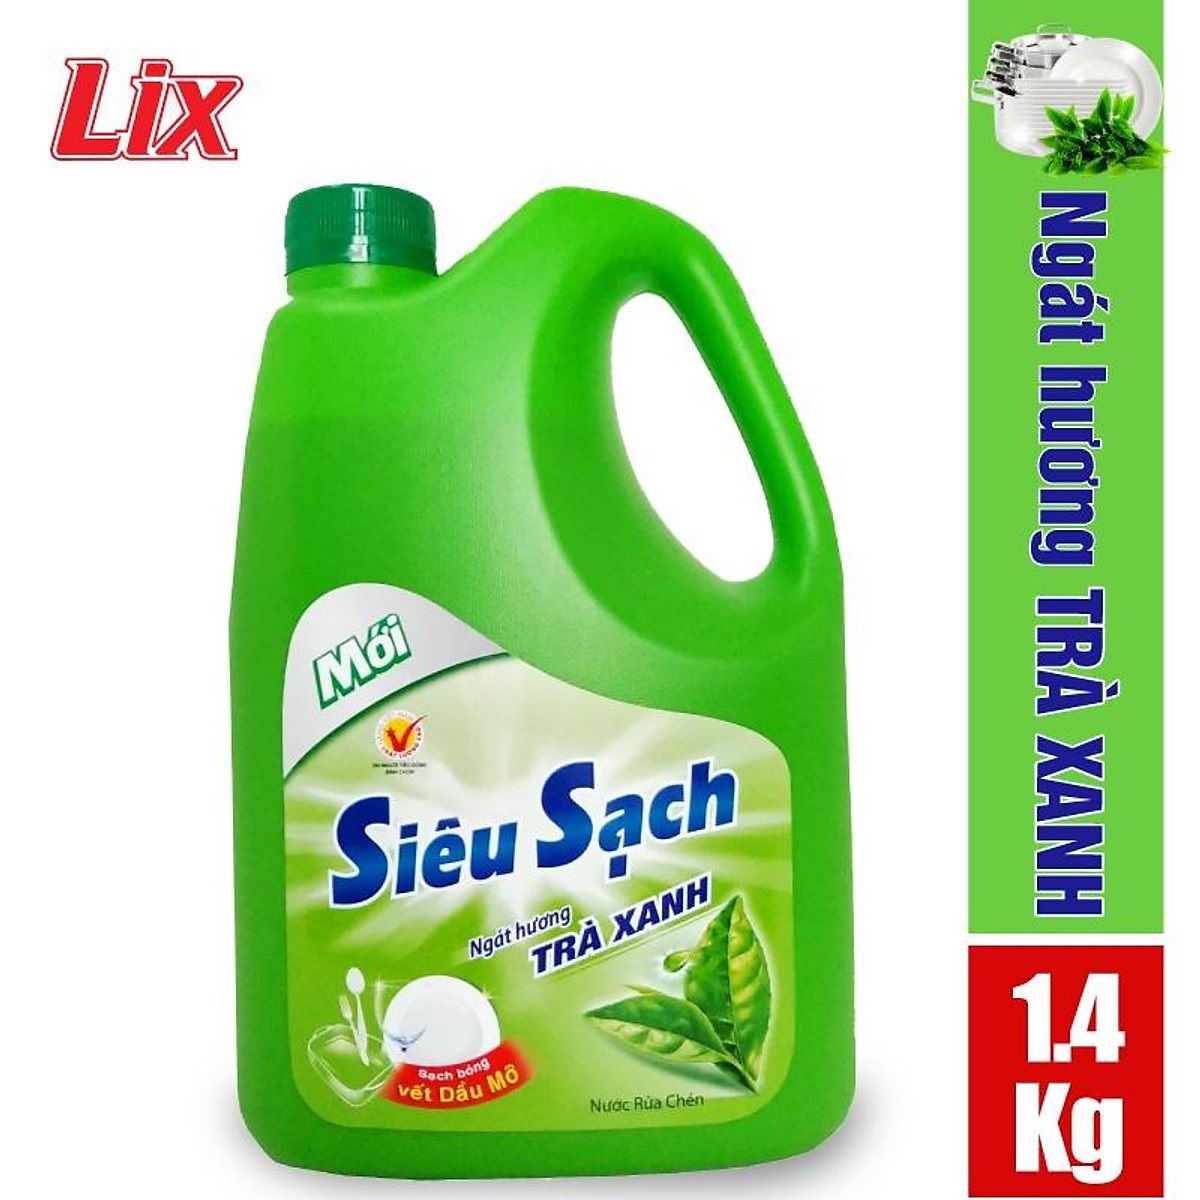 Nước rửa chén Lix siêu sạch hương trà xanh 1.4Kg N8106 thơm dịu sạch bóng vết dầu mỡ